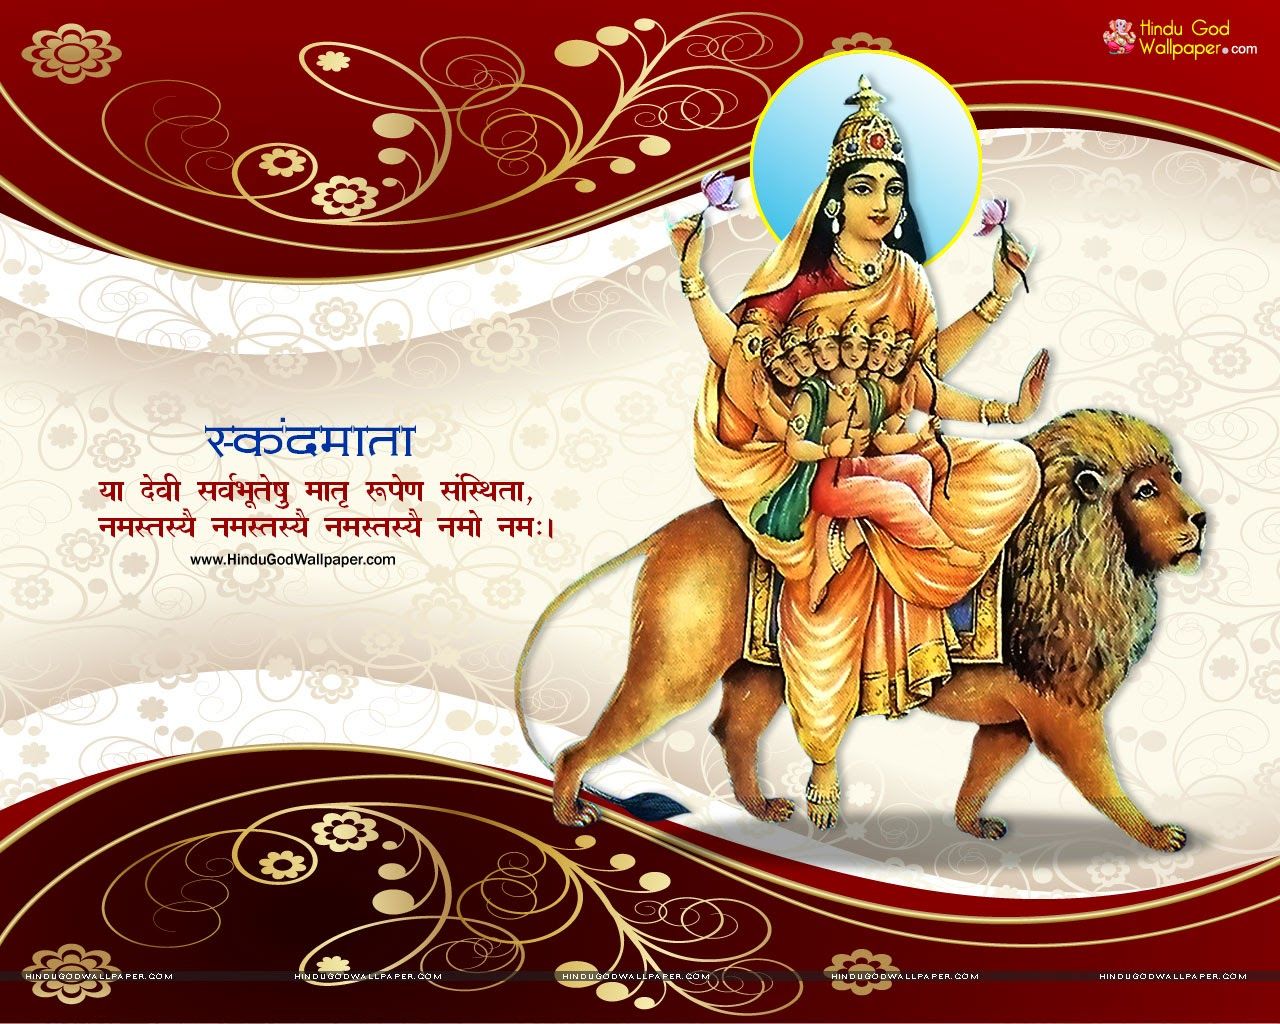 Hindu Goddess HD Wallpapers | HINDU GOD WALLPAPERS FREE DOWNLOAD